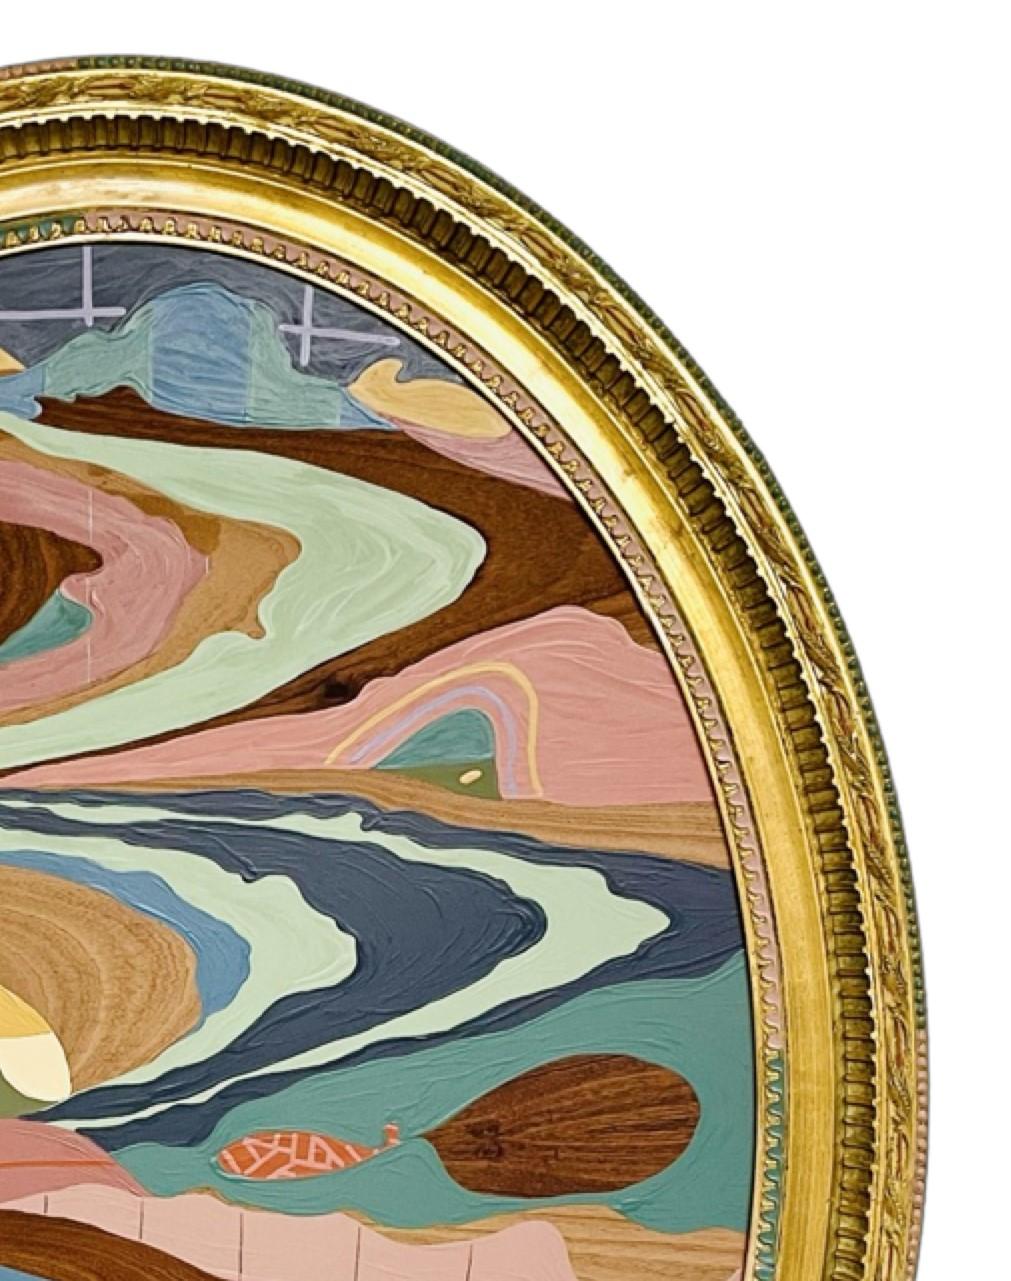 Zeitgenössische farbenfrohe abstrakte Landschaftsmalerei des in New Jersey lebenden Künstlers Russ Rubin. Das Werk zeigt eine jenseitige Landschaft in gedämpften Wüstentönen, die der Künstler in einen dekorativen Vintage-Rahmen gehängt hat, der den